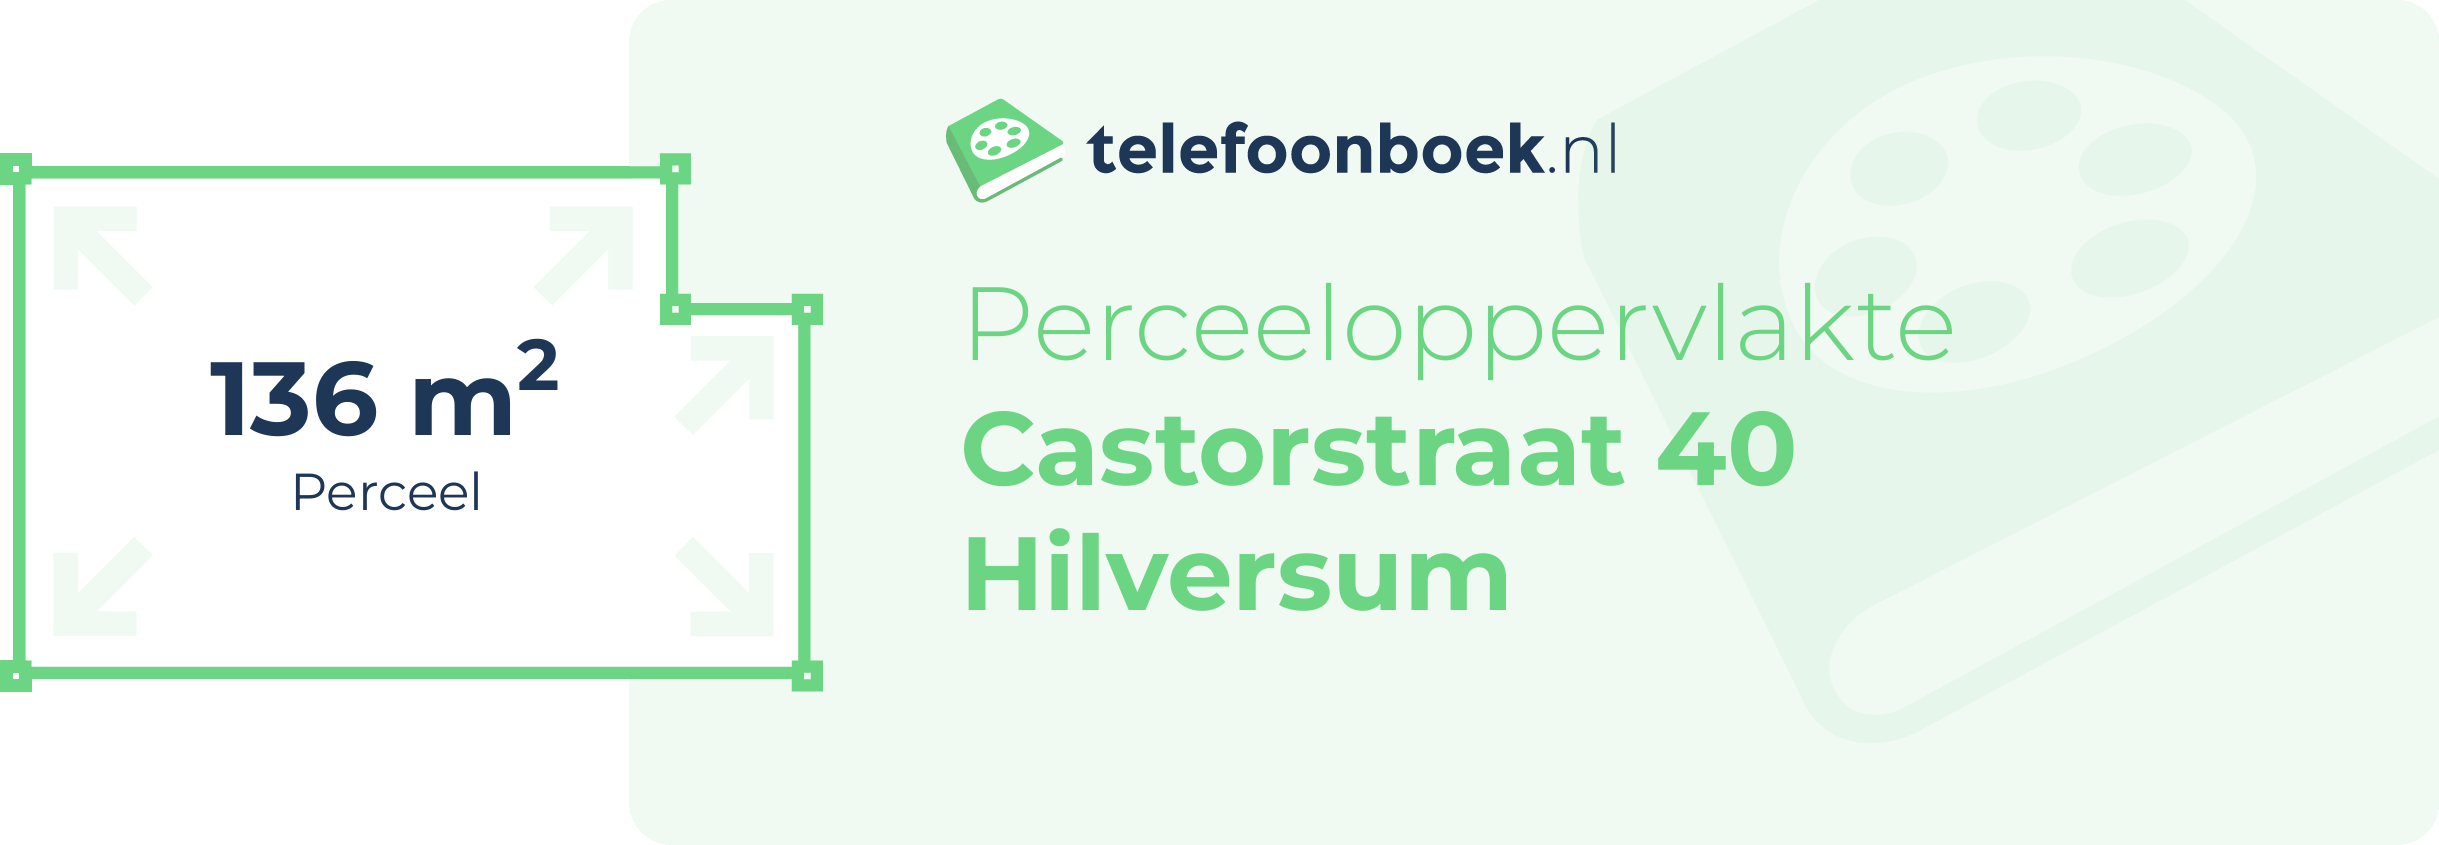 Perceeloppervlakte Castorstraat 40 Hilversum